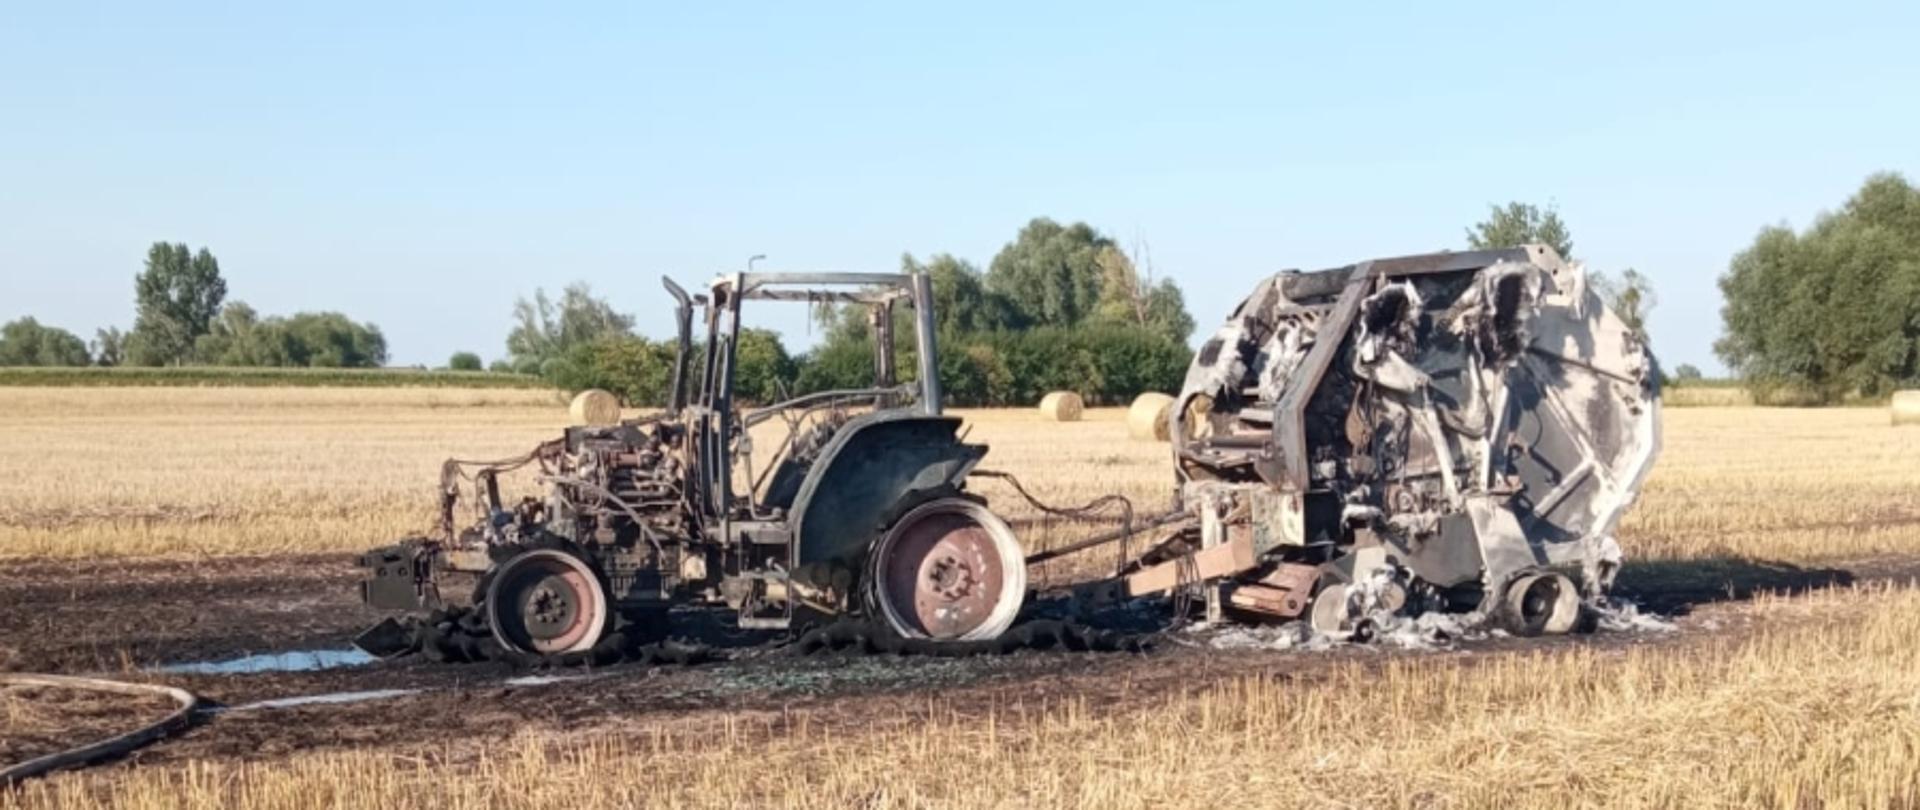 Na miejscu widoczny spalony ciągnik rolniczy sprzężony z prasą belującą, stojący na rżysku.